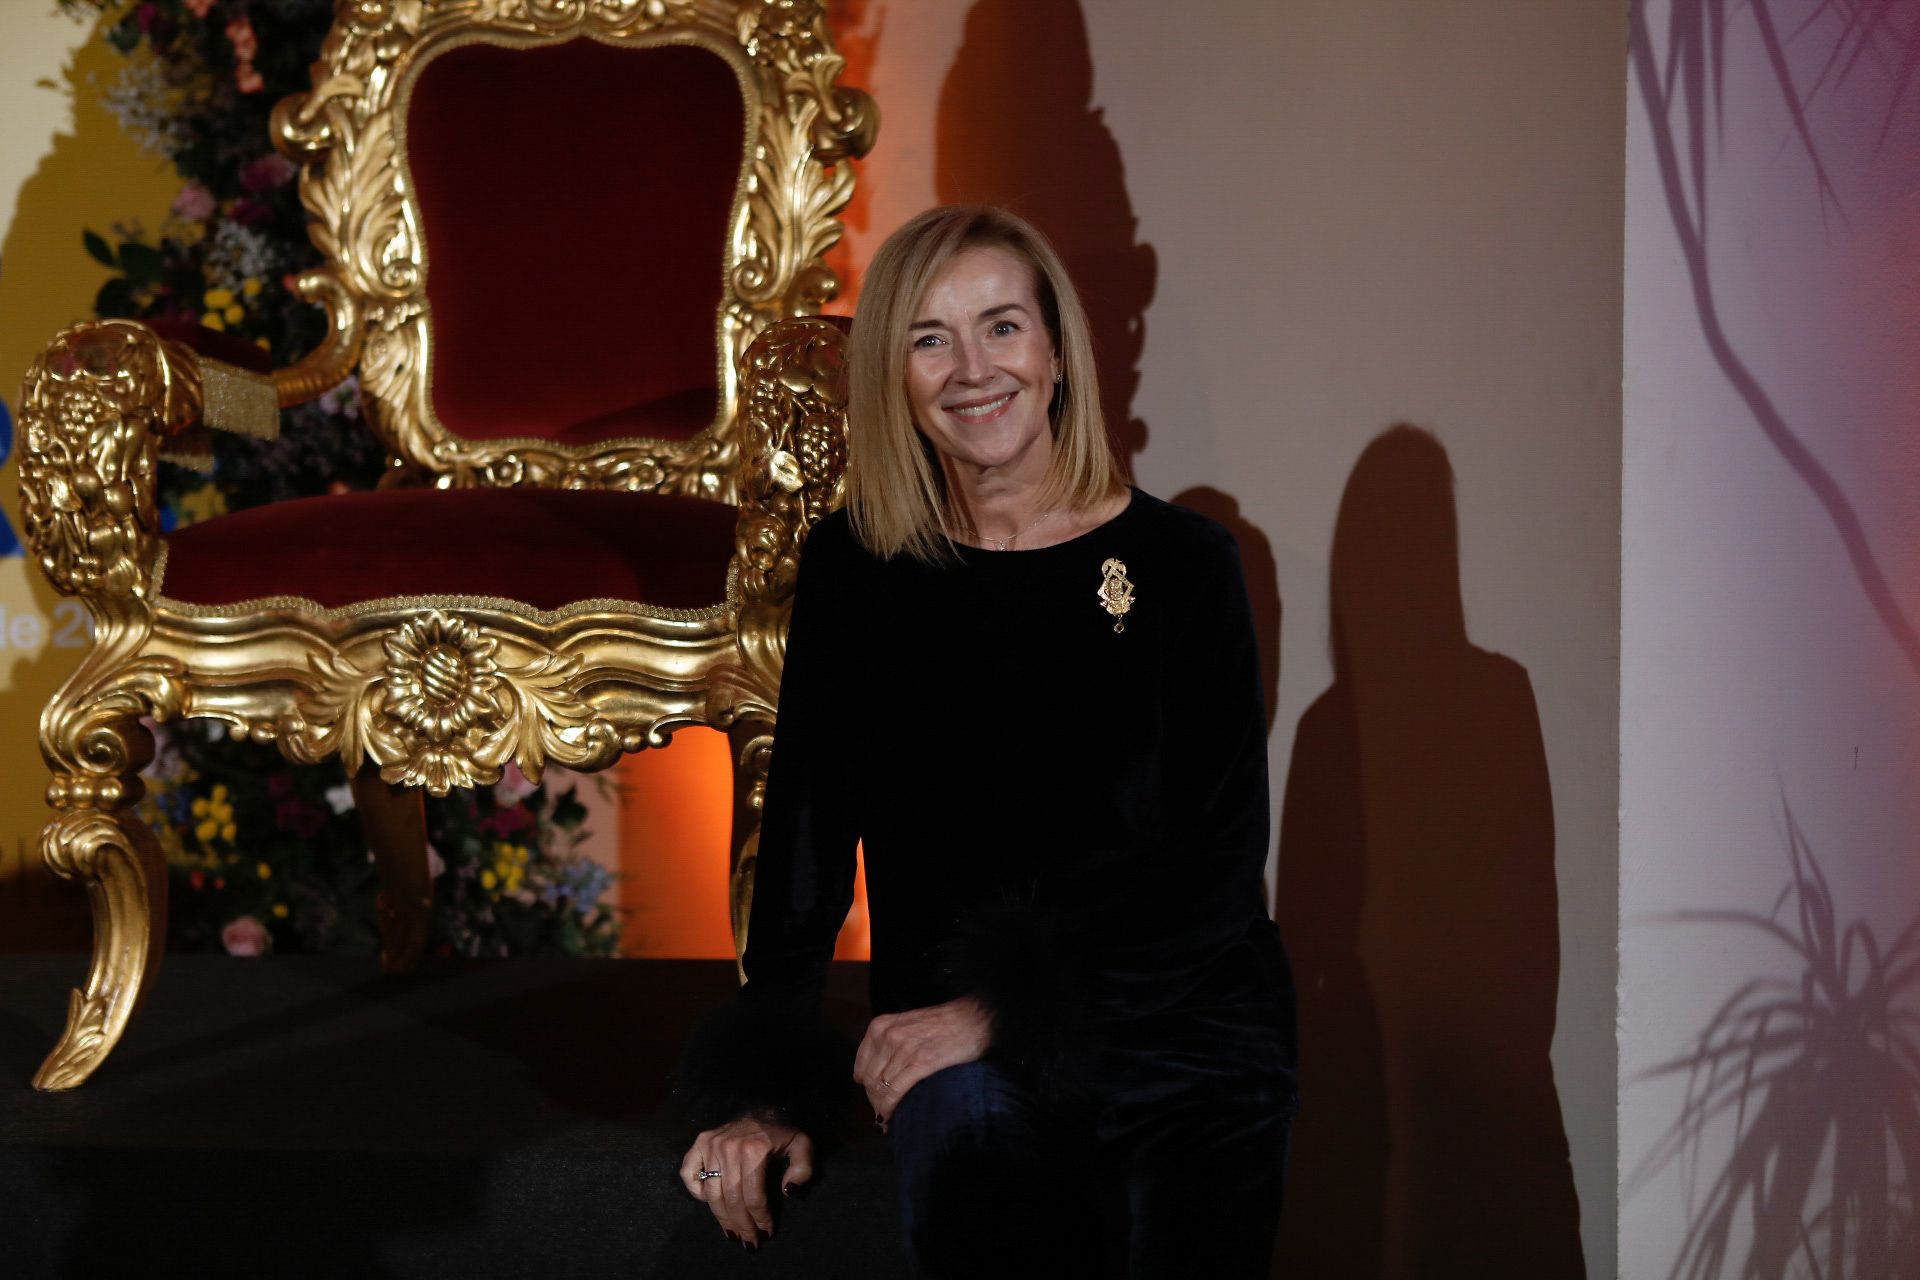 La Diputación y la "Cadira d'Or" reúnen a las falleras mayores de València de la historia